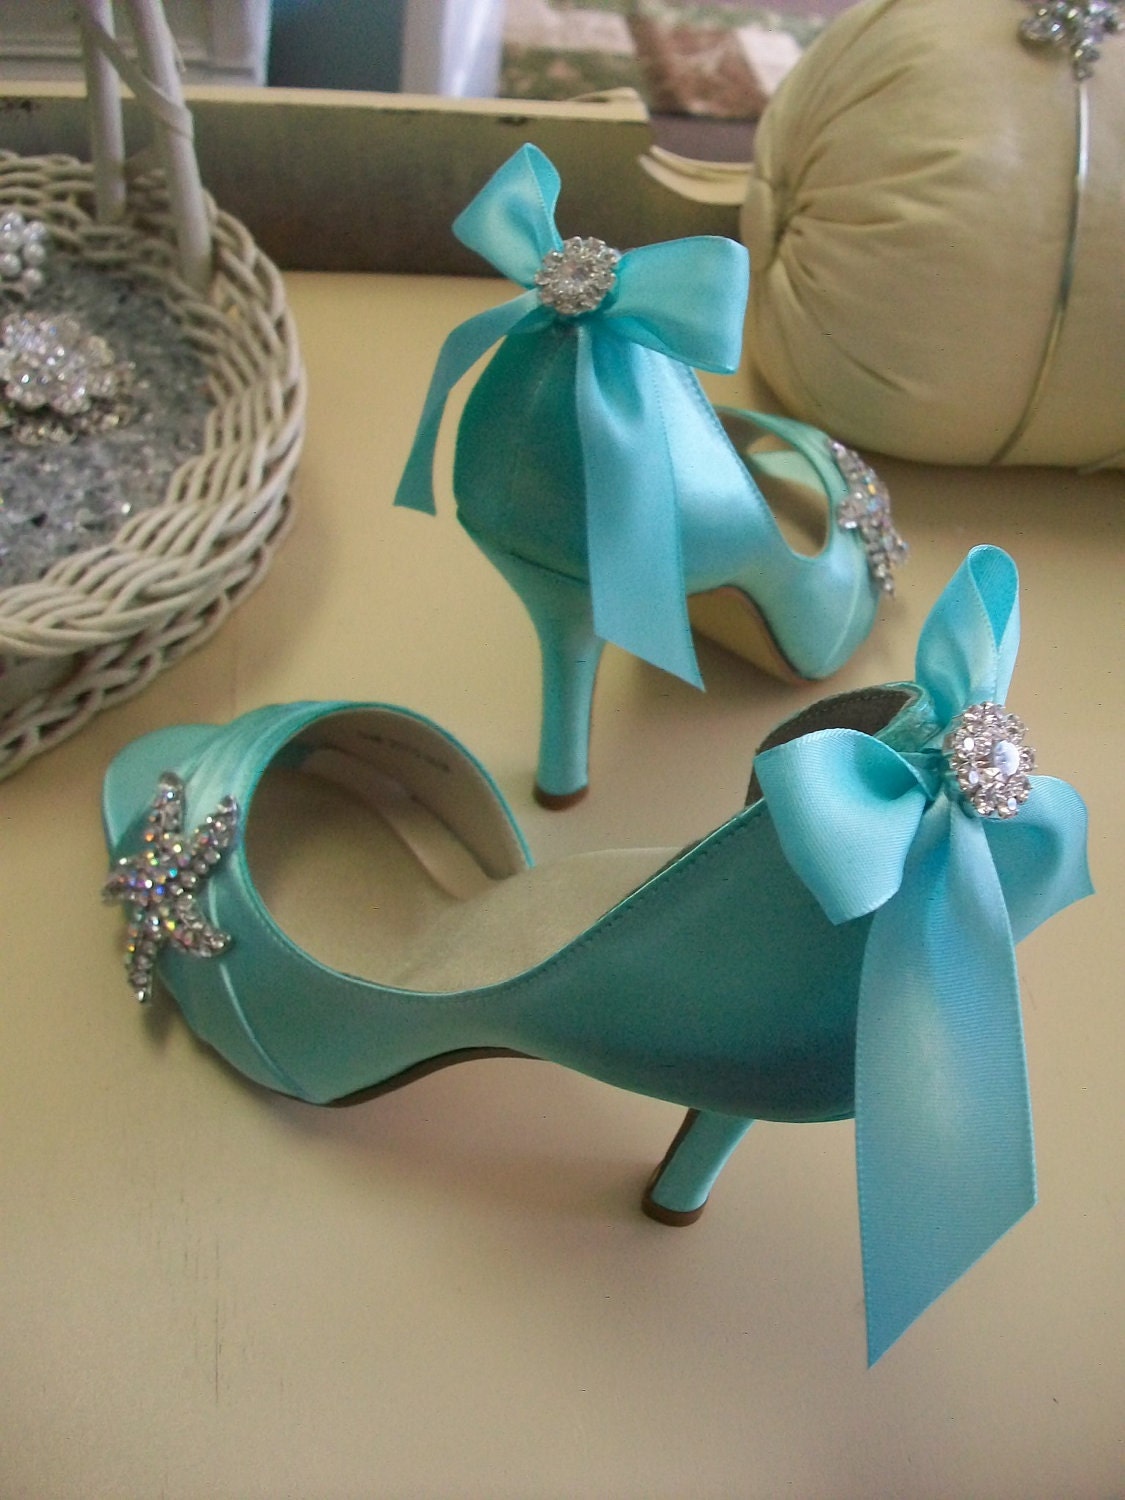 Свадьба Starfish обувь - Пляж-Peep Toe с кристаллами и лук - выбрать из более чем 100 выбор цвета - Destination Wedding Shoes По Parisxox